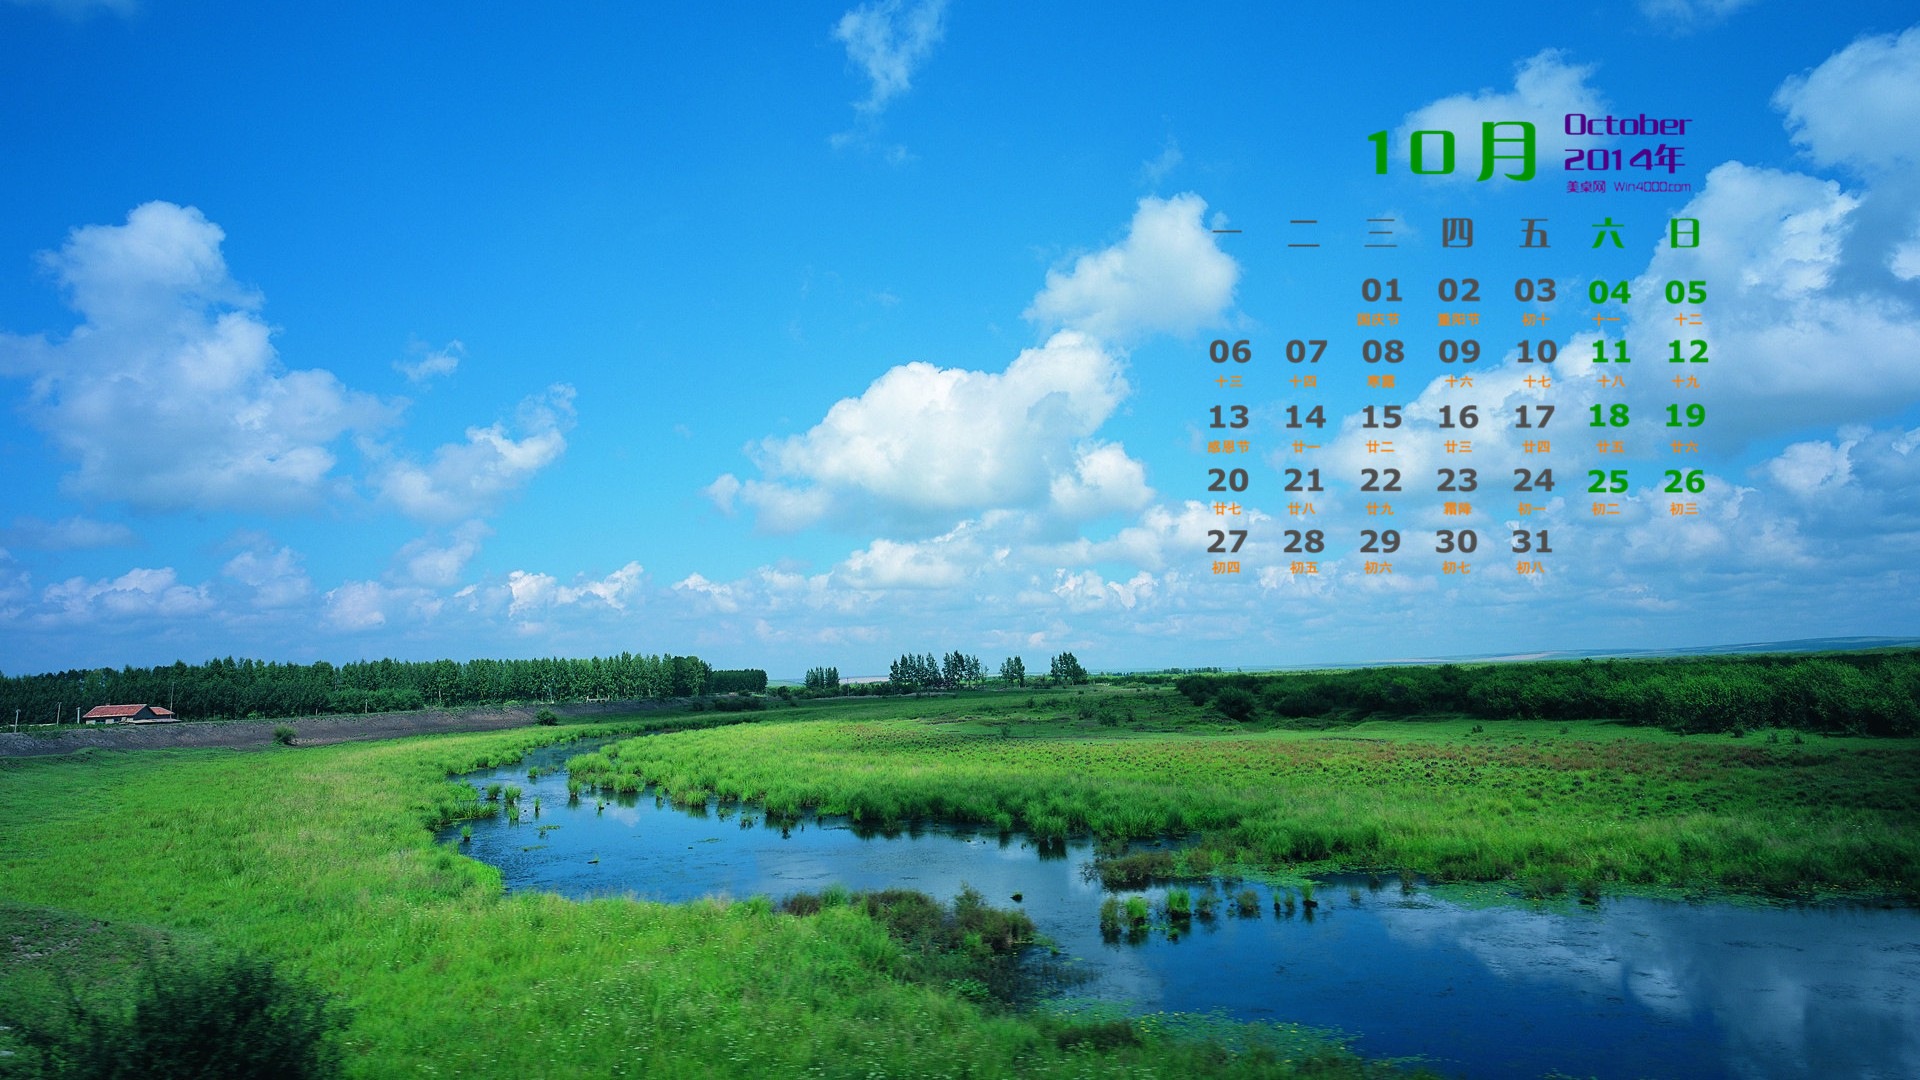 10 2014 wallpaper Calendario (1) #4 - 1920x1080